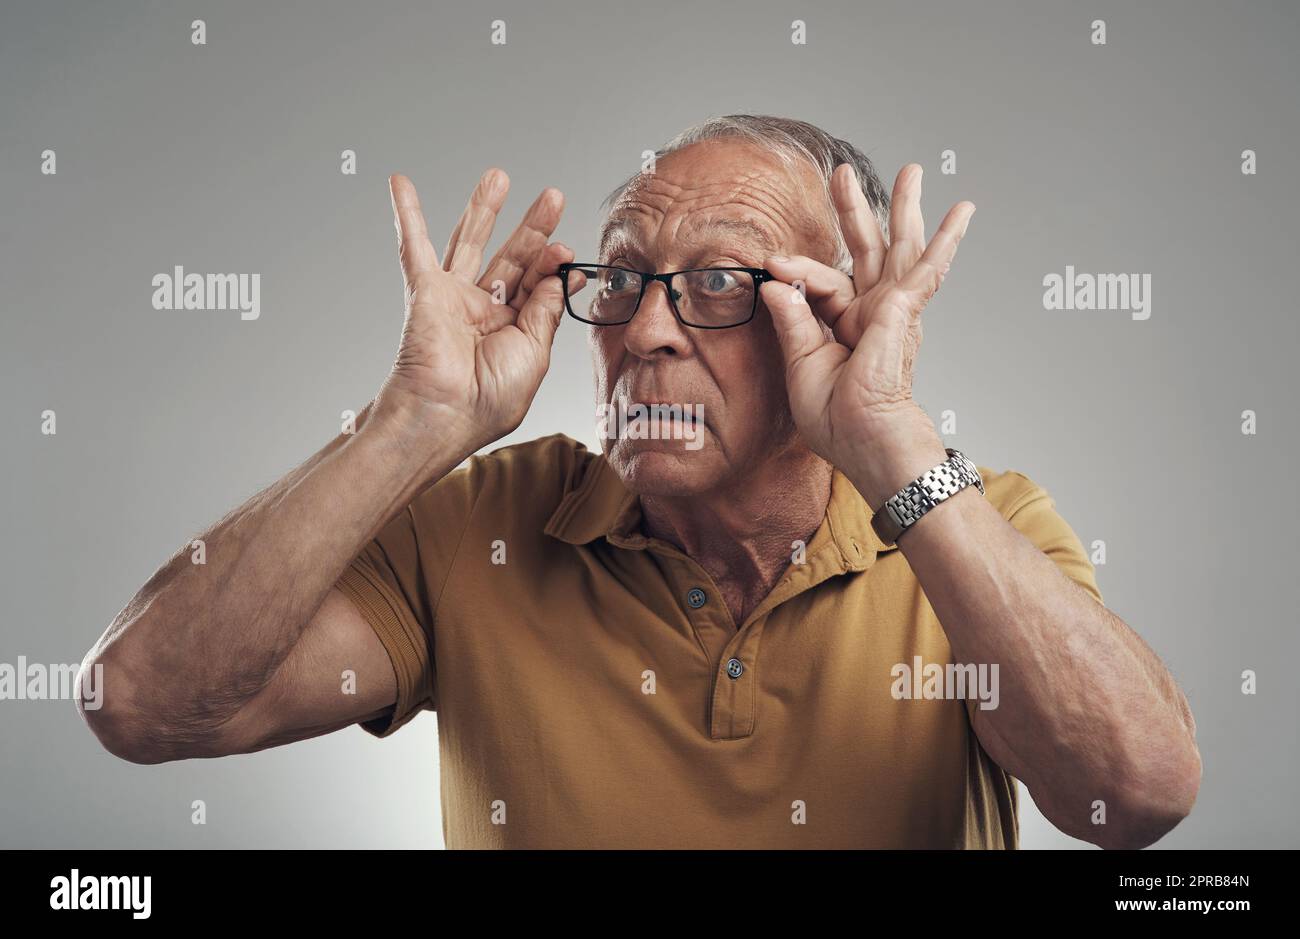 Wie meine neuen Spezifikationen. Studioaufnahme eines älteren Mannes, der seine Brille vor einem grauen Hintergrund anpasst. Stockfoto